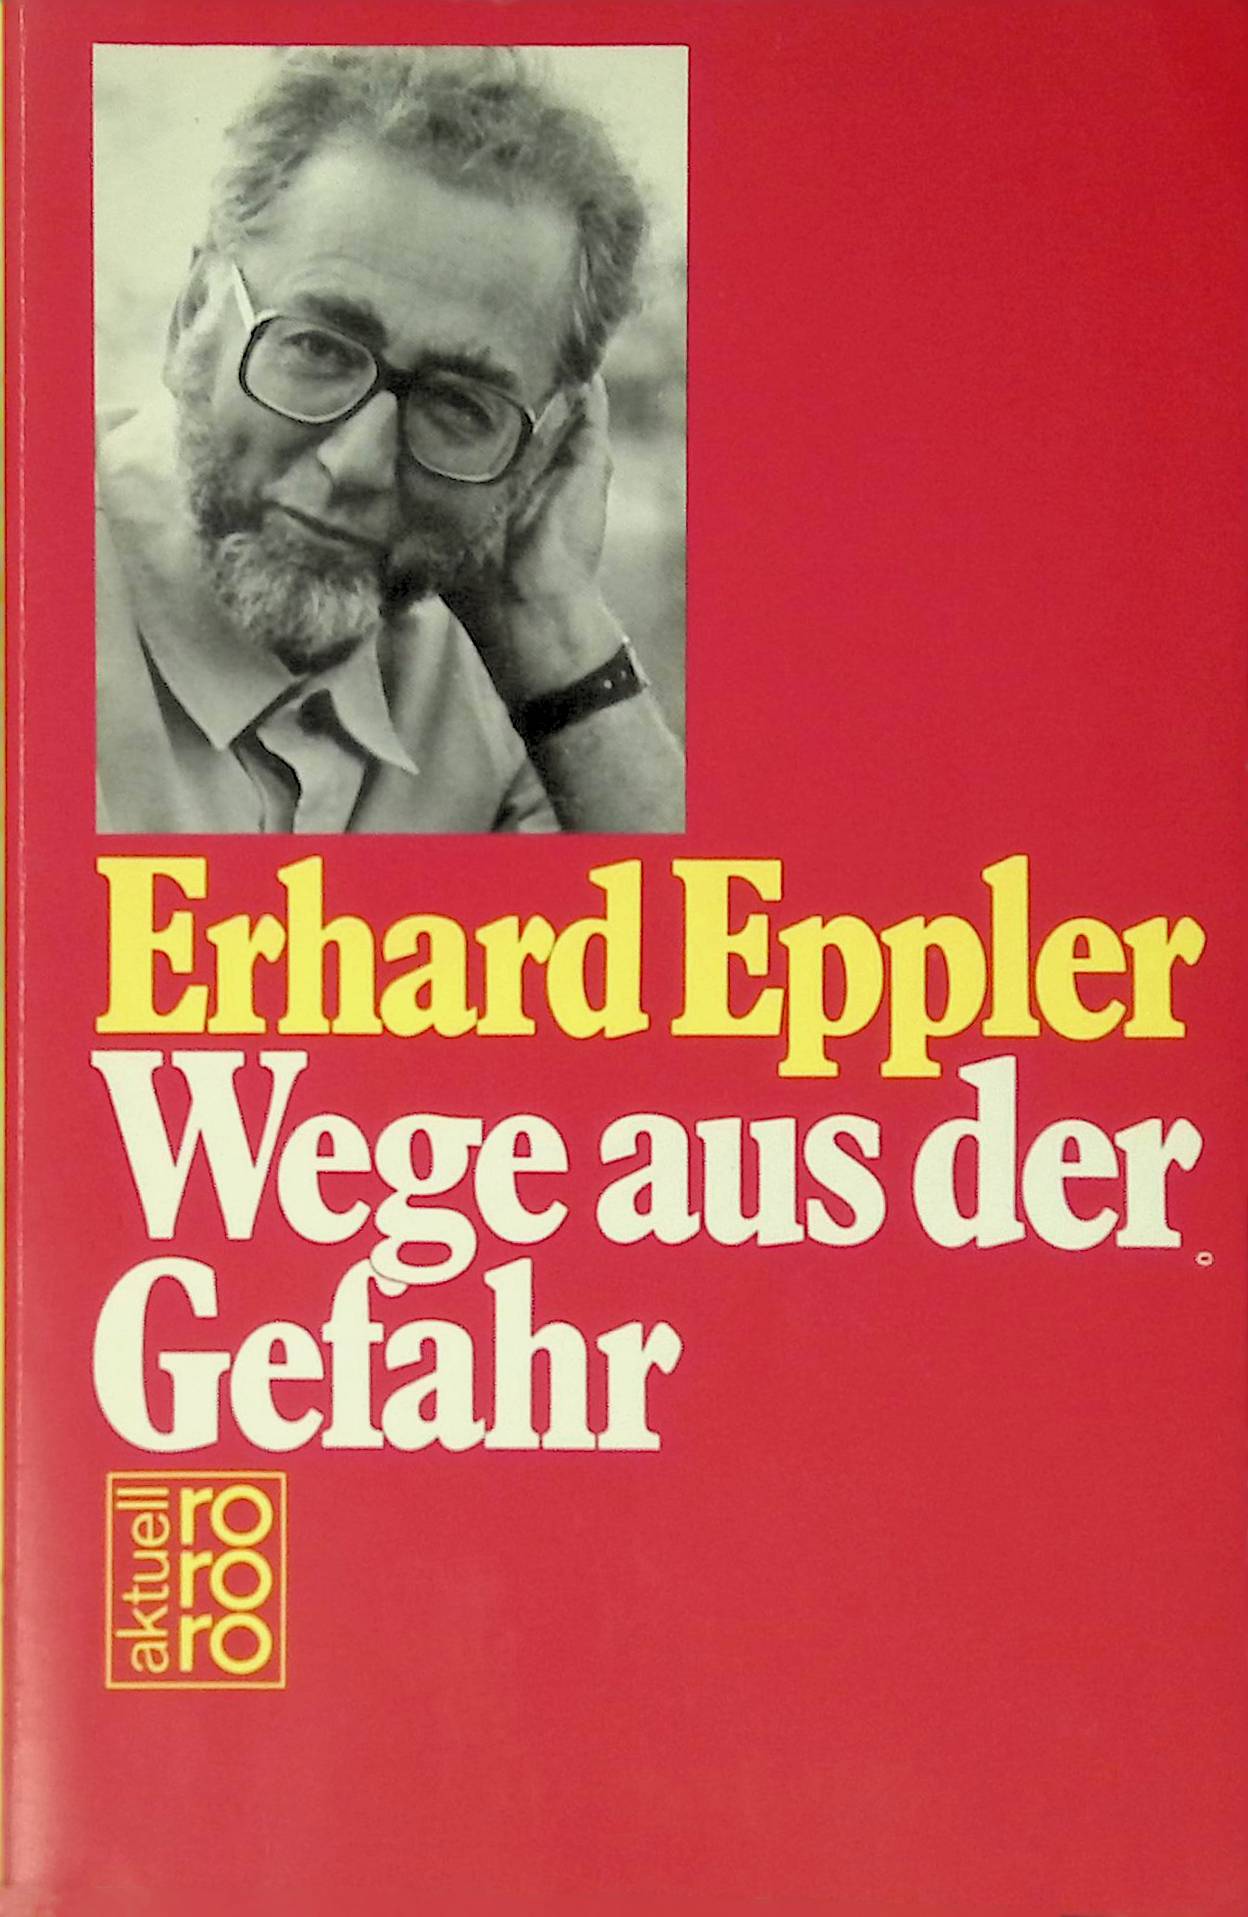 Wege aus der Gefahr. (Nr 5643) - Eppler, Erhard